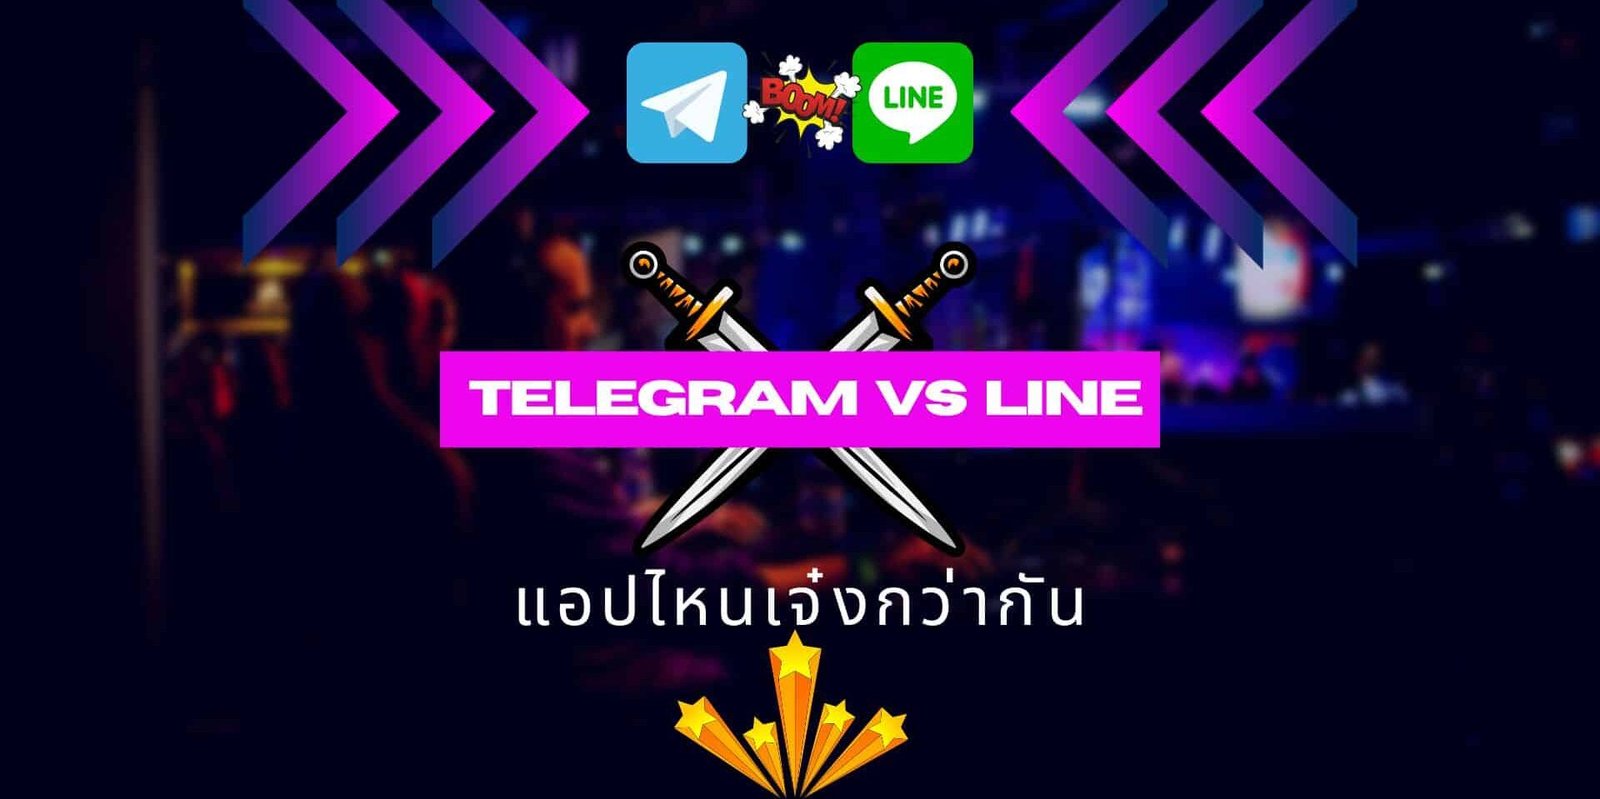 telegram vs line